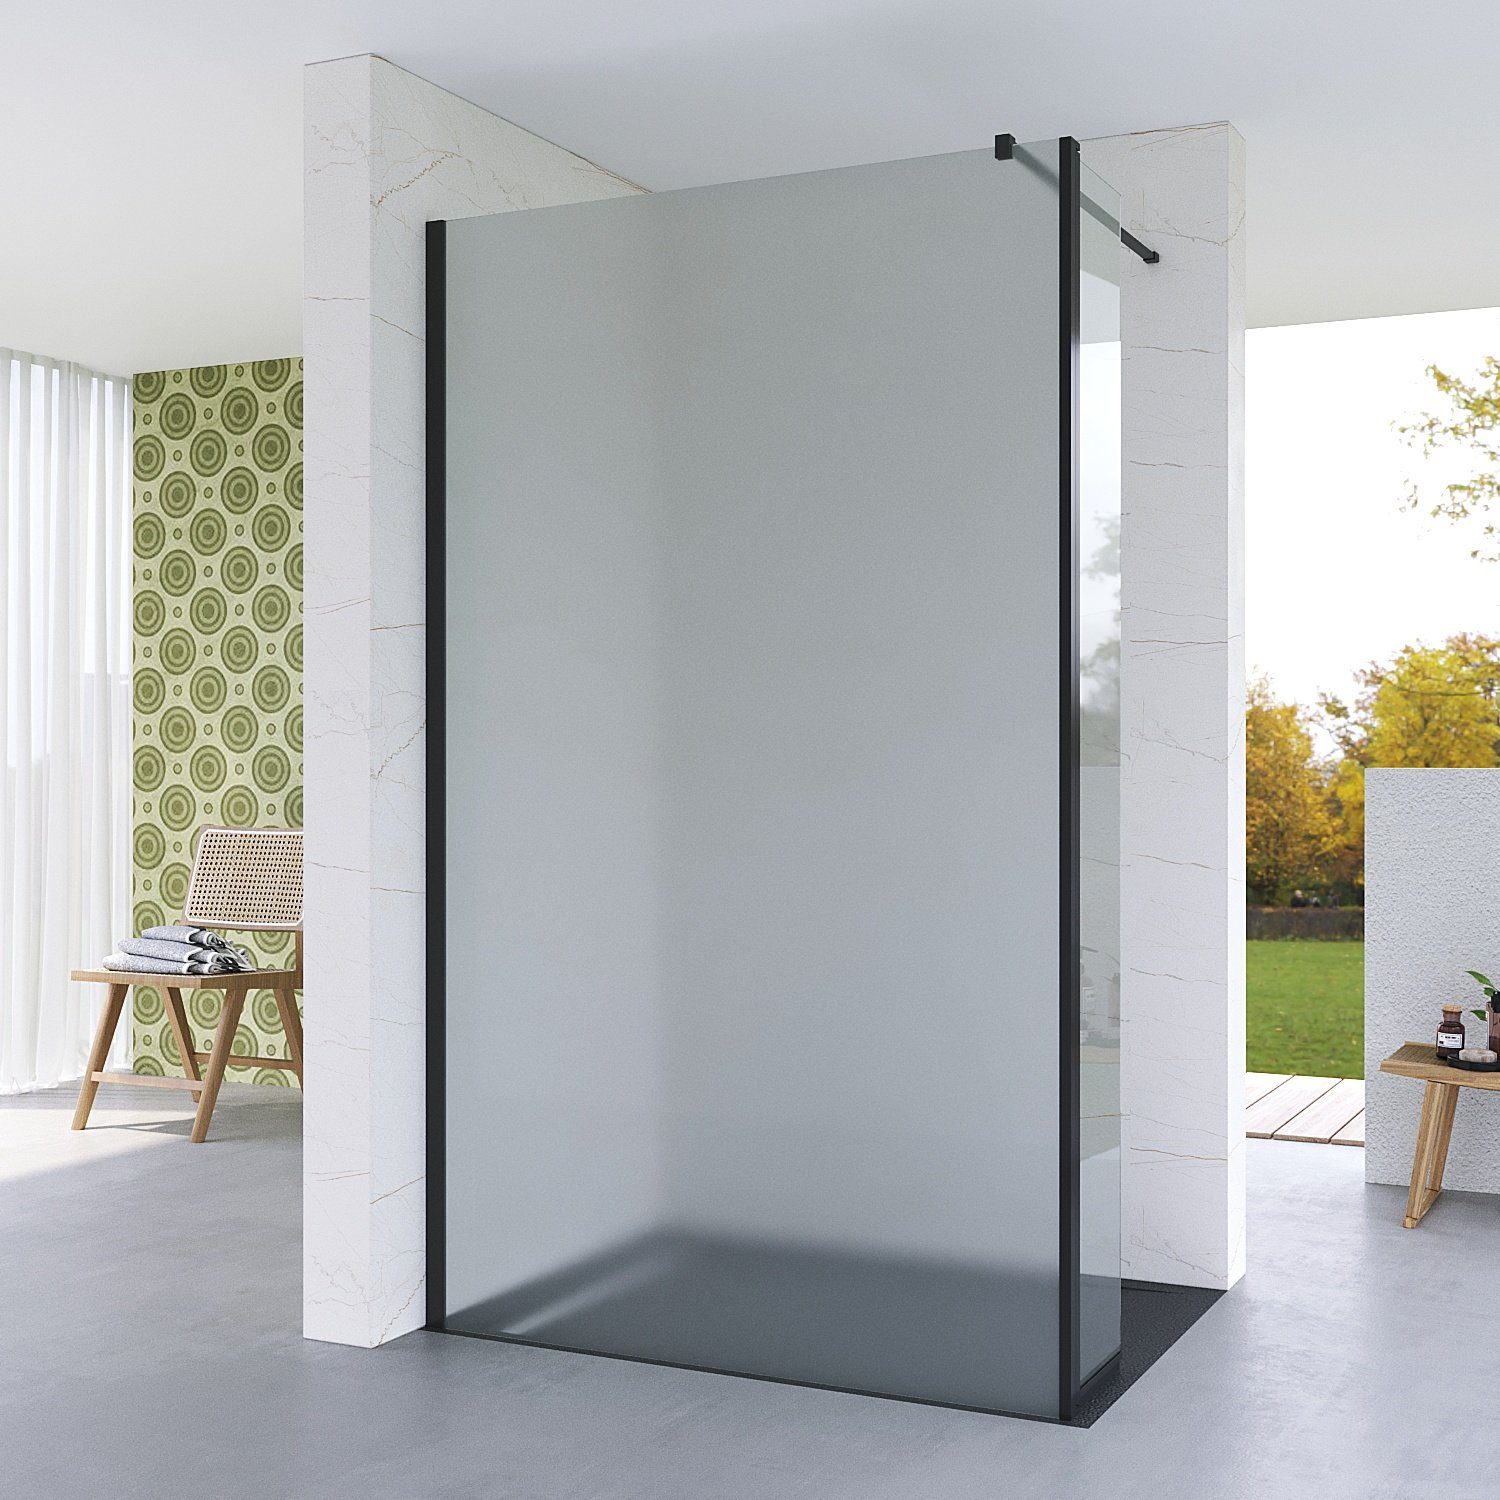 AQUALAVOS Duschwand Duschwand für Walk in Duschabtrennung mit 30 cm schwenkbare Seitenwand, 8 mm Einscheiben-Sicherheitsglas (ESG) mit Nanobeschichtung, 100x200 cm, 120x200 cm, Aluminiumprofile in schwarz matt